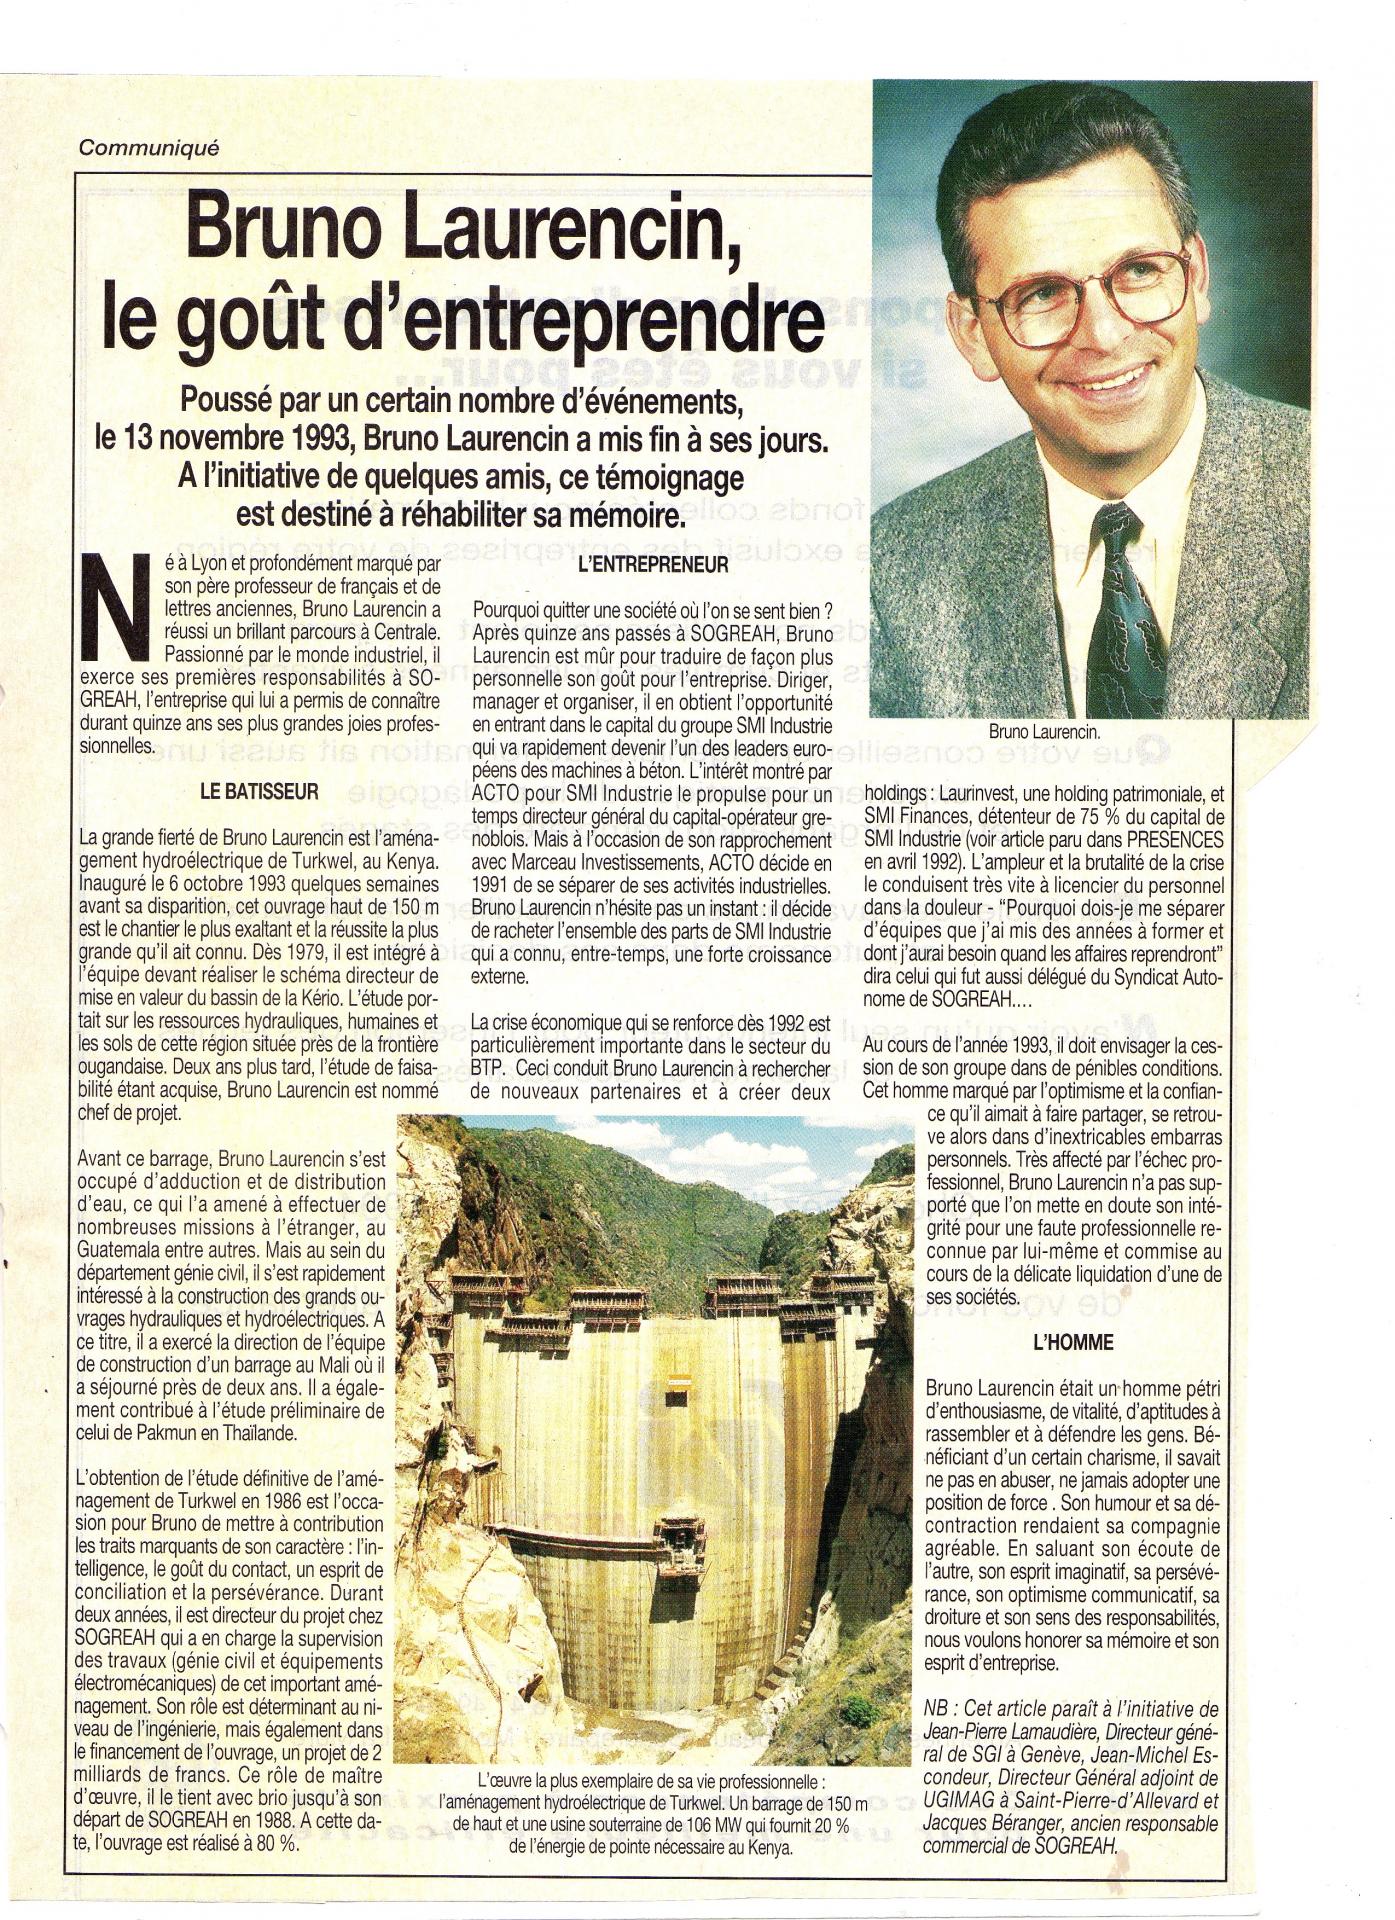 Laurencin bruno article 1993